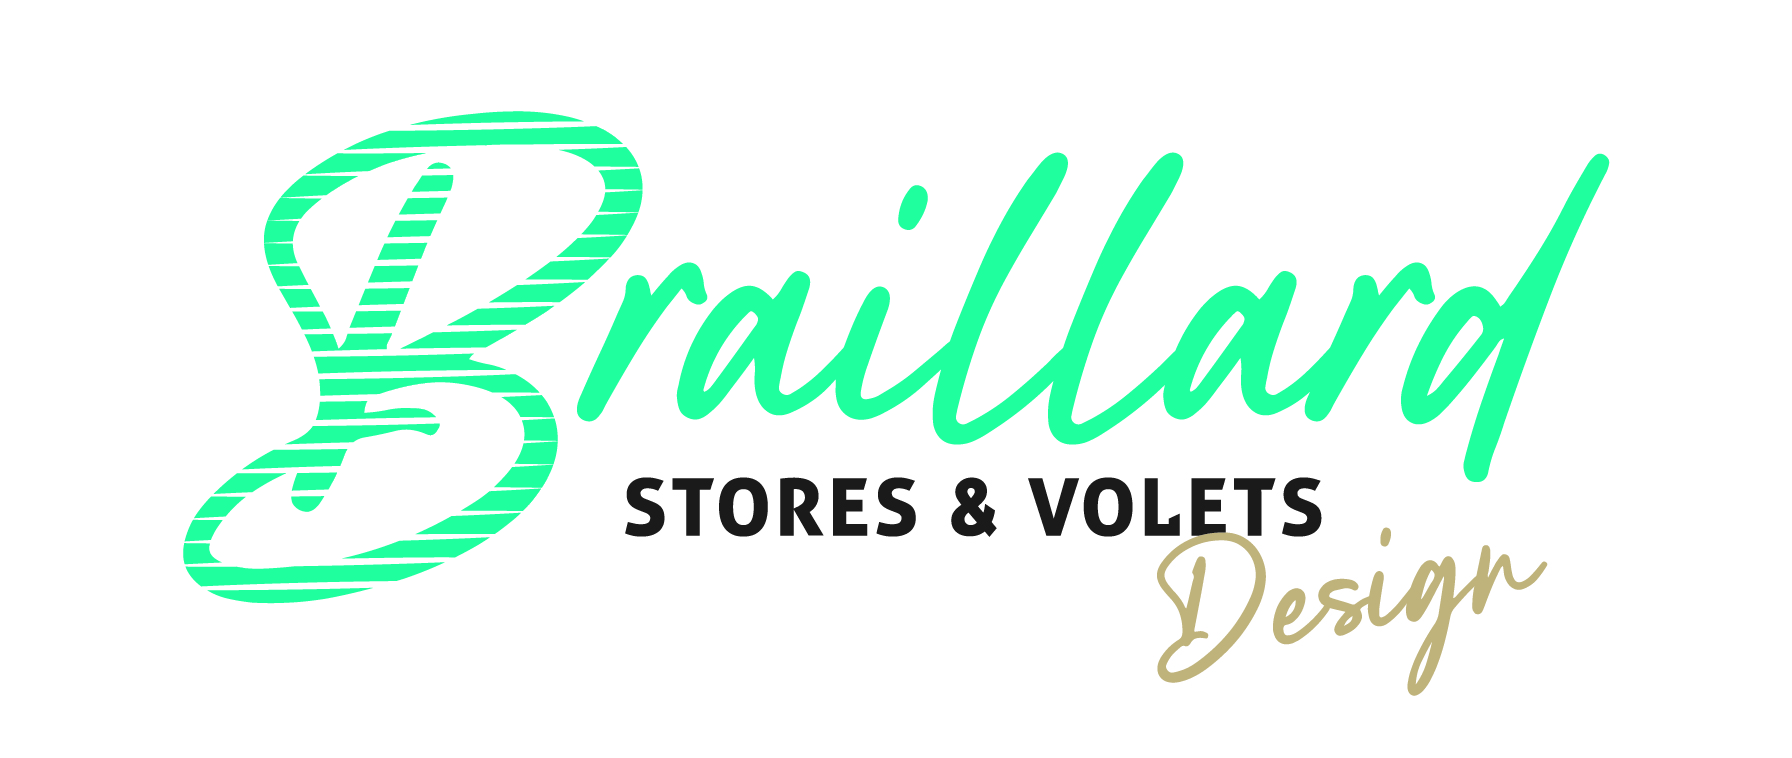 Braillard Stores & Volets Design